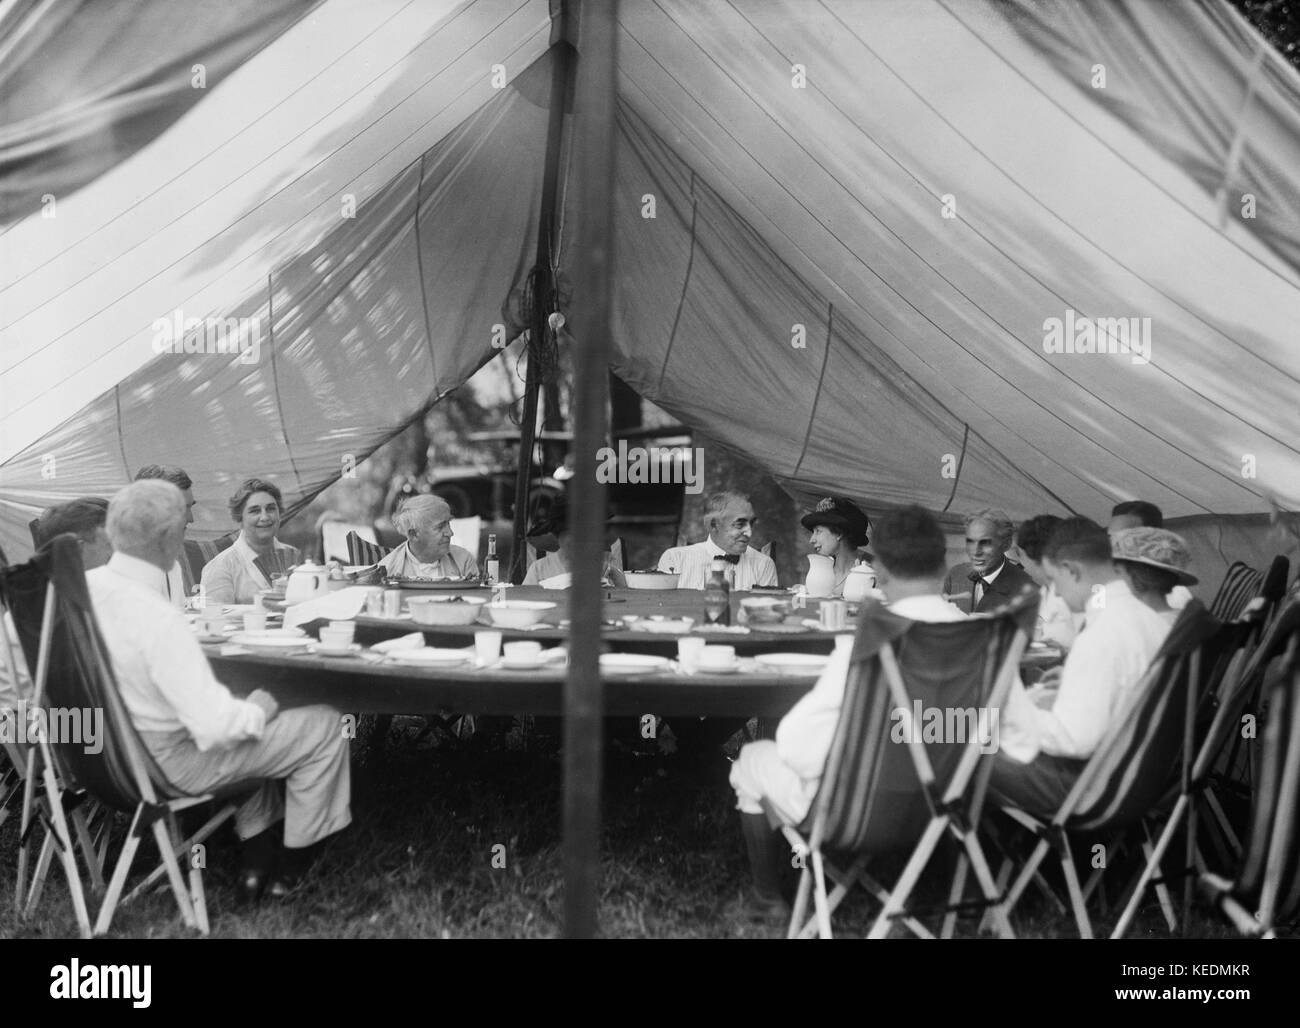 Thomas Edison,presidente statunitense Warren Harding,Henry Ford,e le famiglie aventi il pranzo sotto la tenda al campeggio,maryland,Stati Uniti d'America,Harris & ewing,1921 Foto Stock